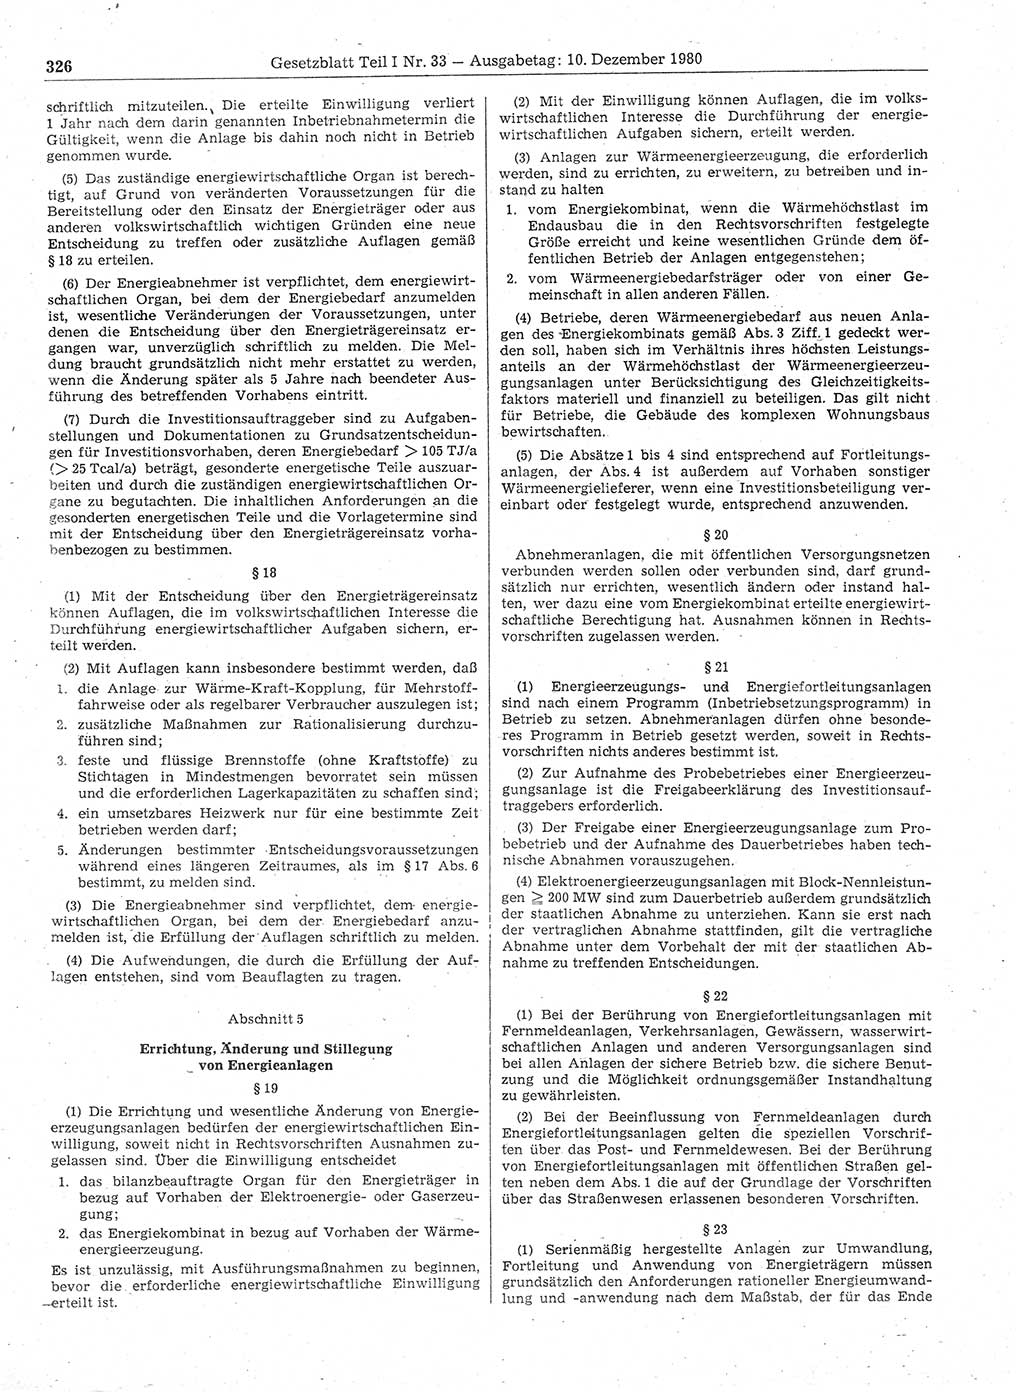 Gesetzblatt (GBl.) der Deutschen Demokratischen Republik (DDR) Teil Ⅰ 1980, Seite 326 (GBl. DDR Ⅰ 1980, S. 326)